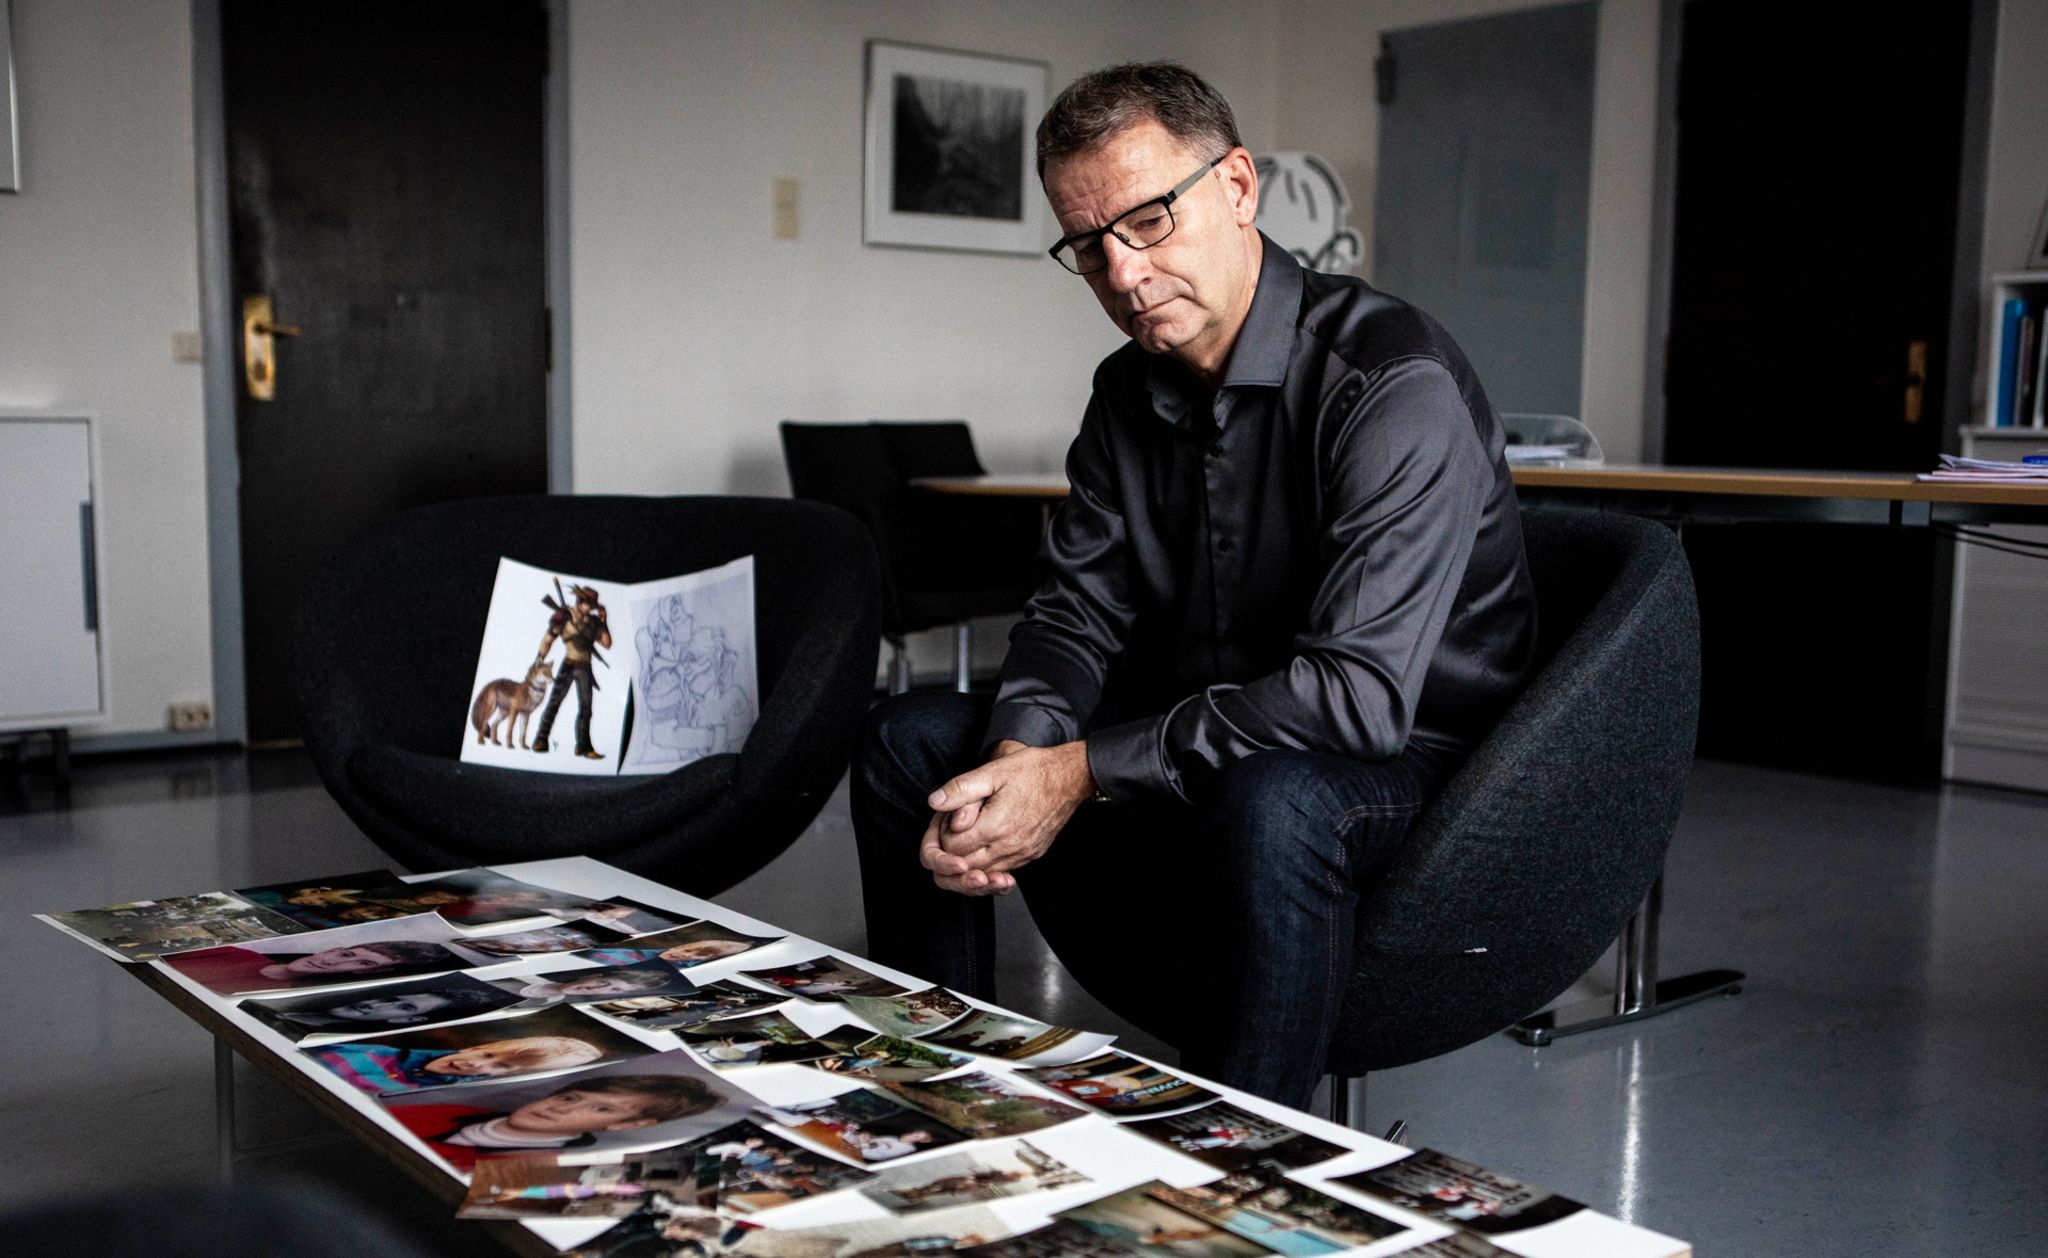 Robert Steen with photos of Mats